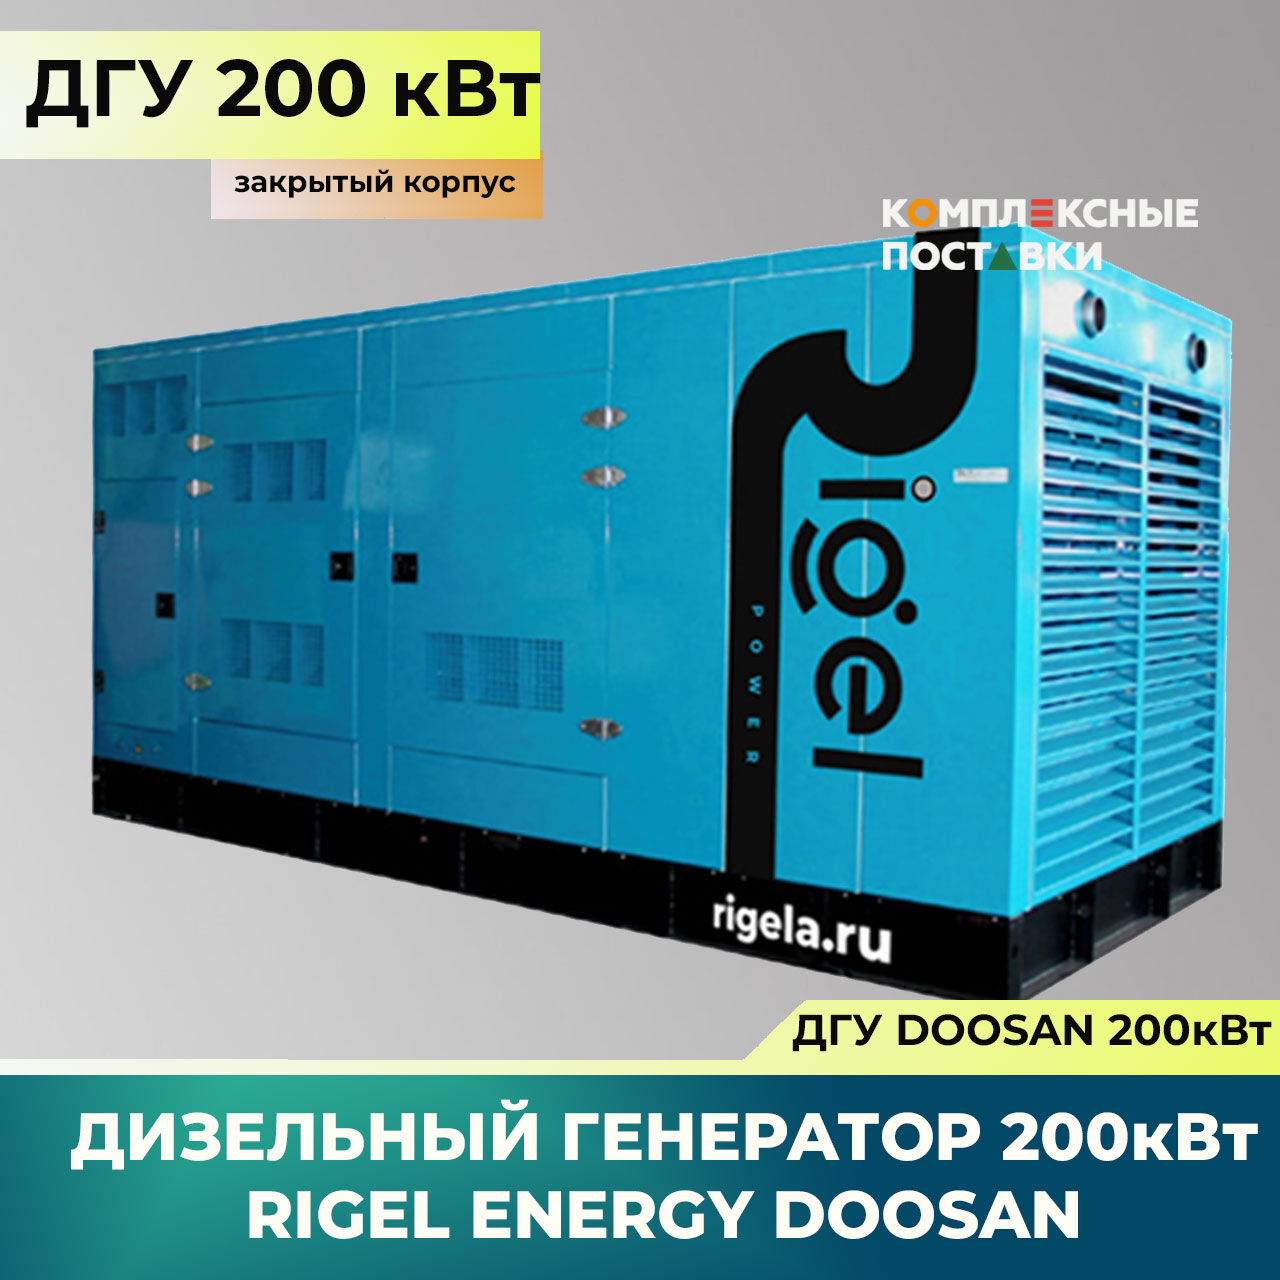 ДГУ 200кВт Doosan Дизель-генератор Rigel Energy Doosan RED 200 (200 кВт, Doosan) закрытый